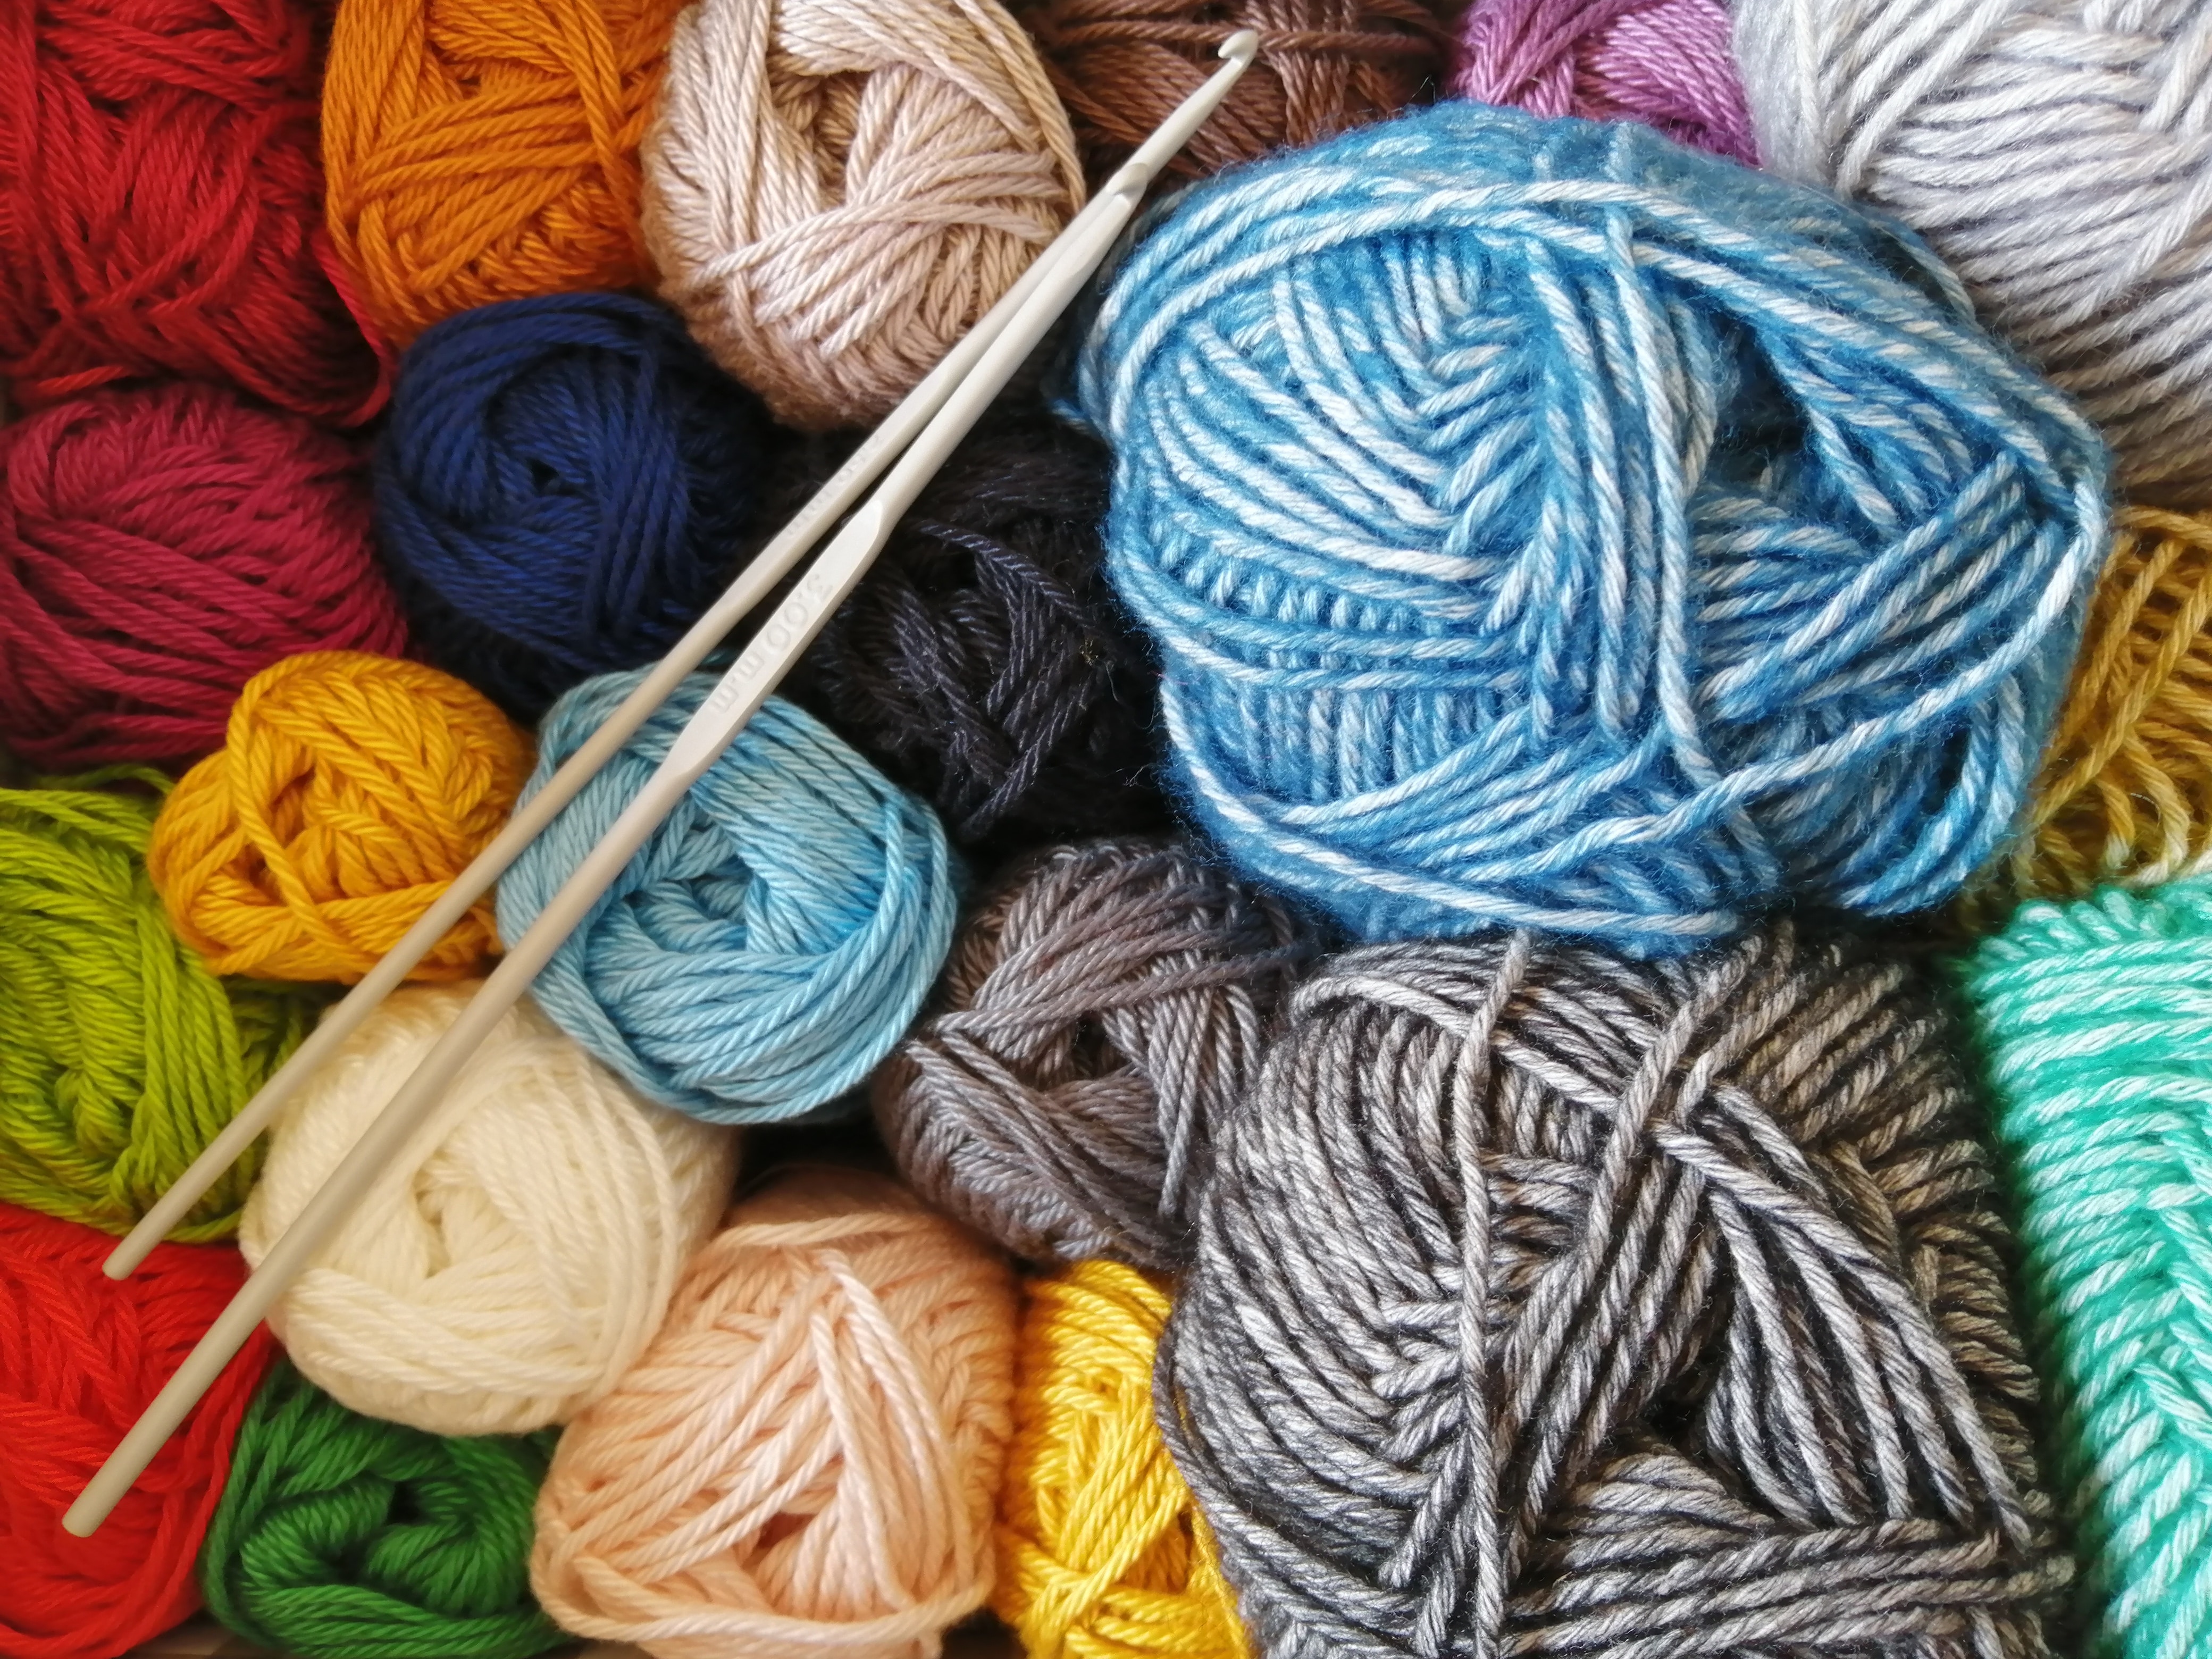 Balls of yarn and bamboo knitting needles 